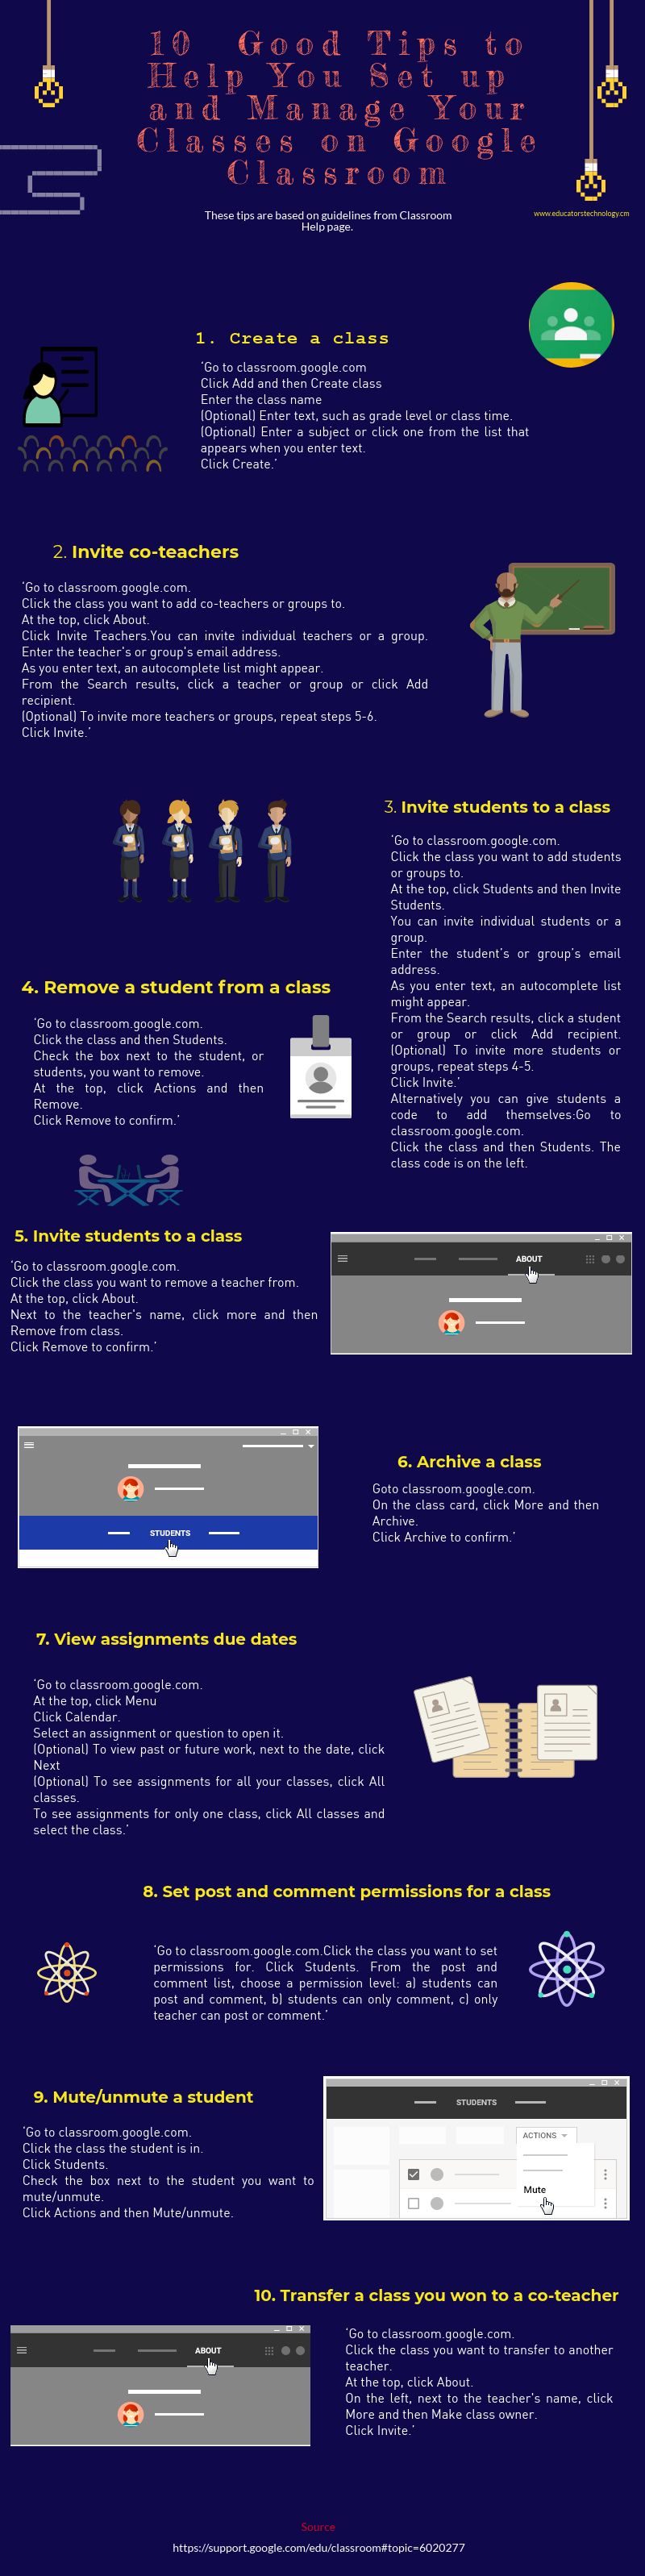 10 excelentes consejos para ayudarte a configurar y administrar tus clases en Google Classroom